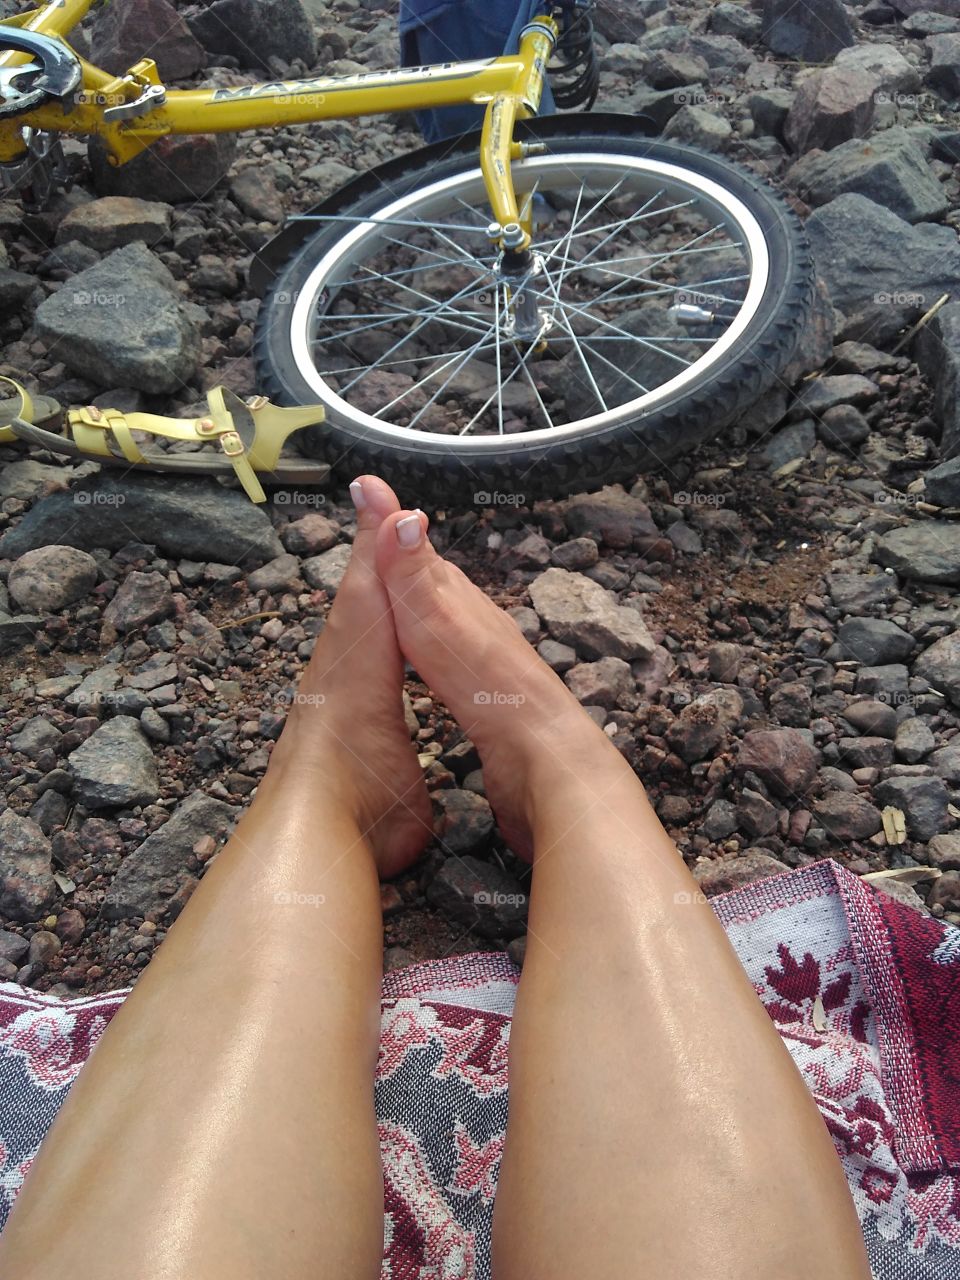 Bike and legs.